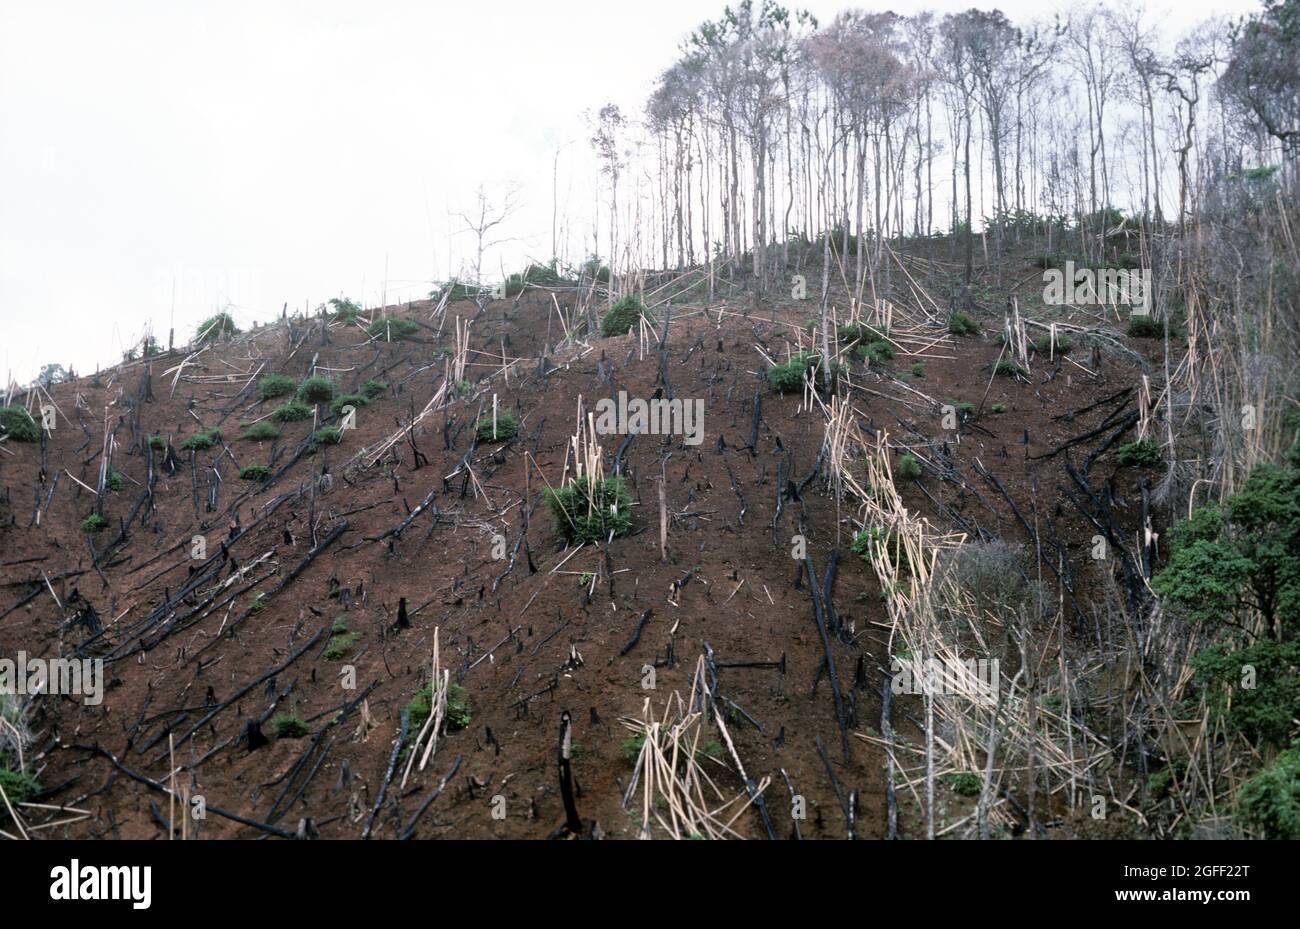 Déforestation, abattage d'arbres et combustion pour dégager plus de terres pour l'agriculture dans une zone déjà décimée, la Thaïlande Banque D'Images